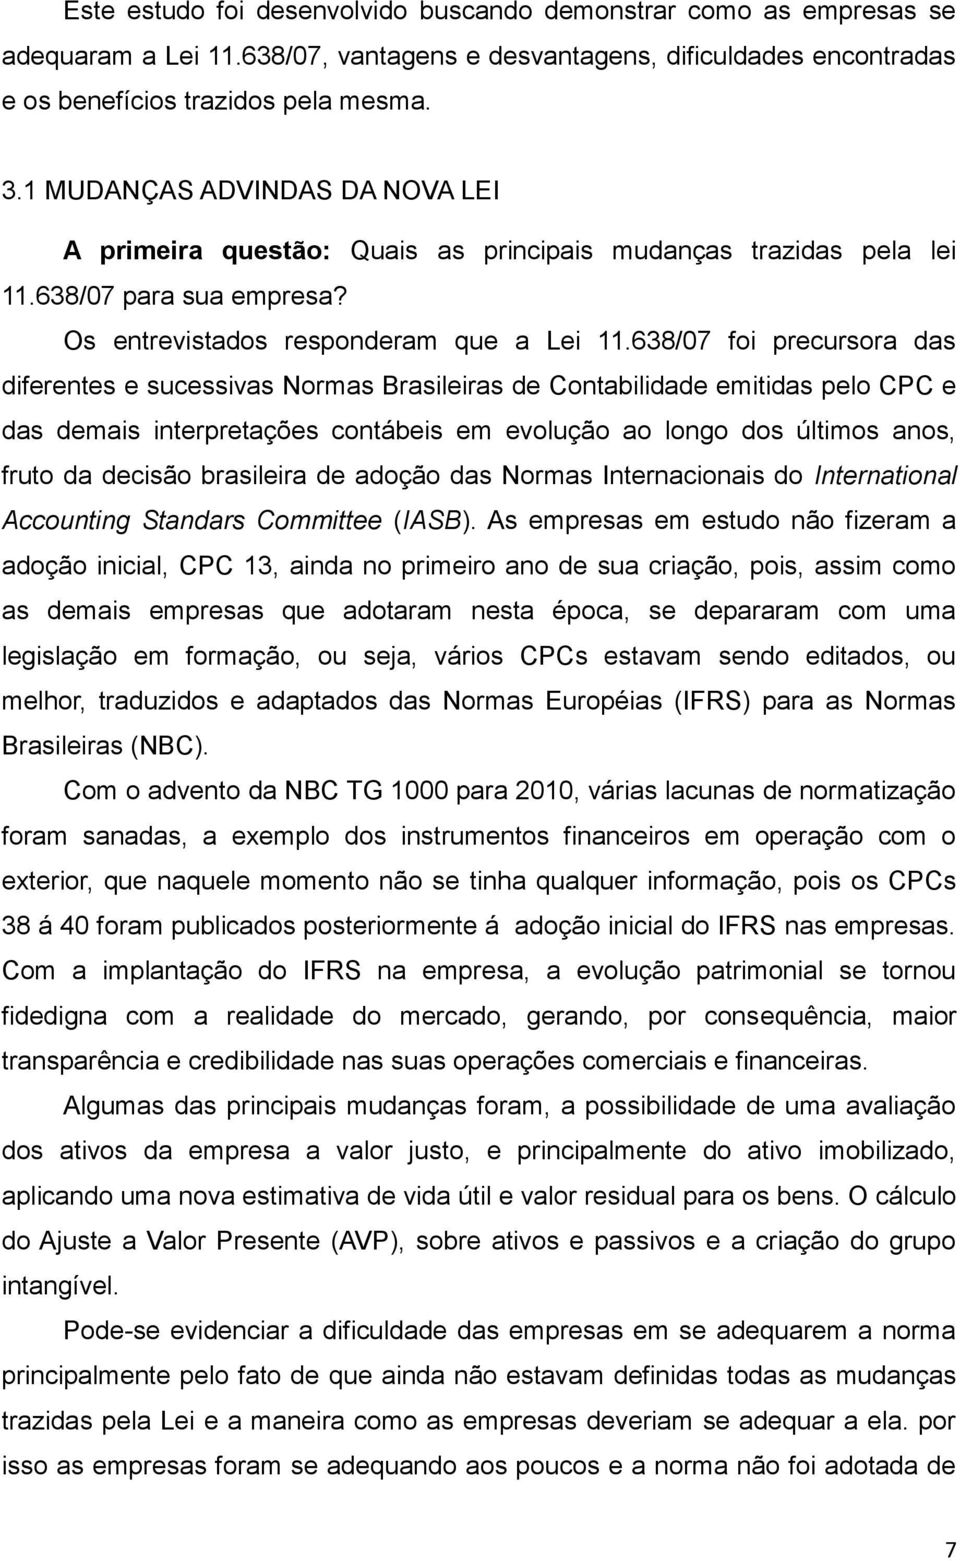 638/07 foi precursora das diferentes e sucessivas Normas Brasileiras de Contabilidade emitidas pelo CPC e das demais interpretações contábeis em evolução ao longo dos últimos anos, fruto da decisão